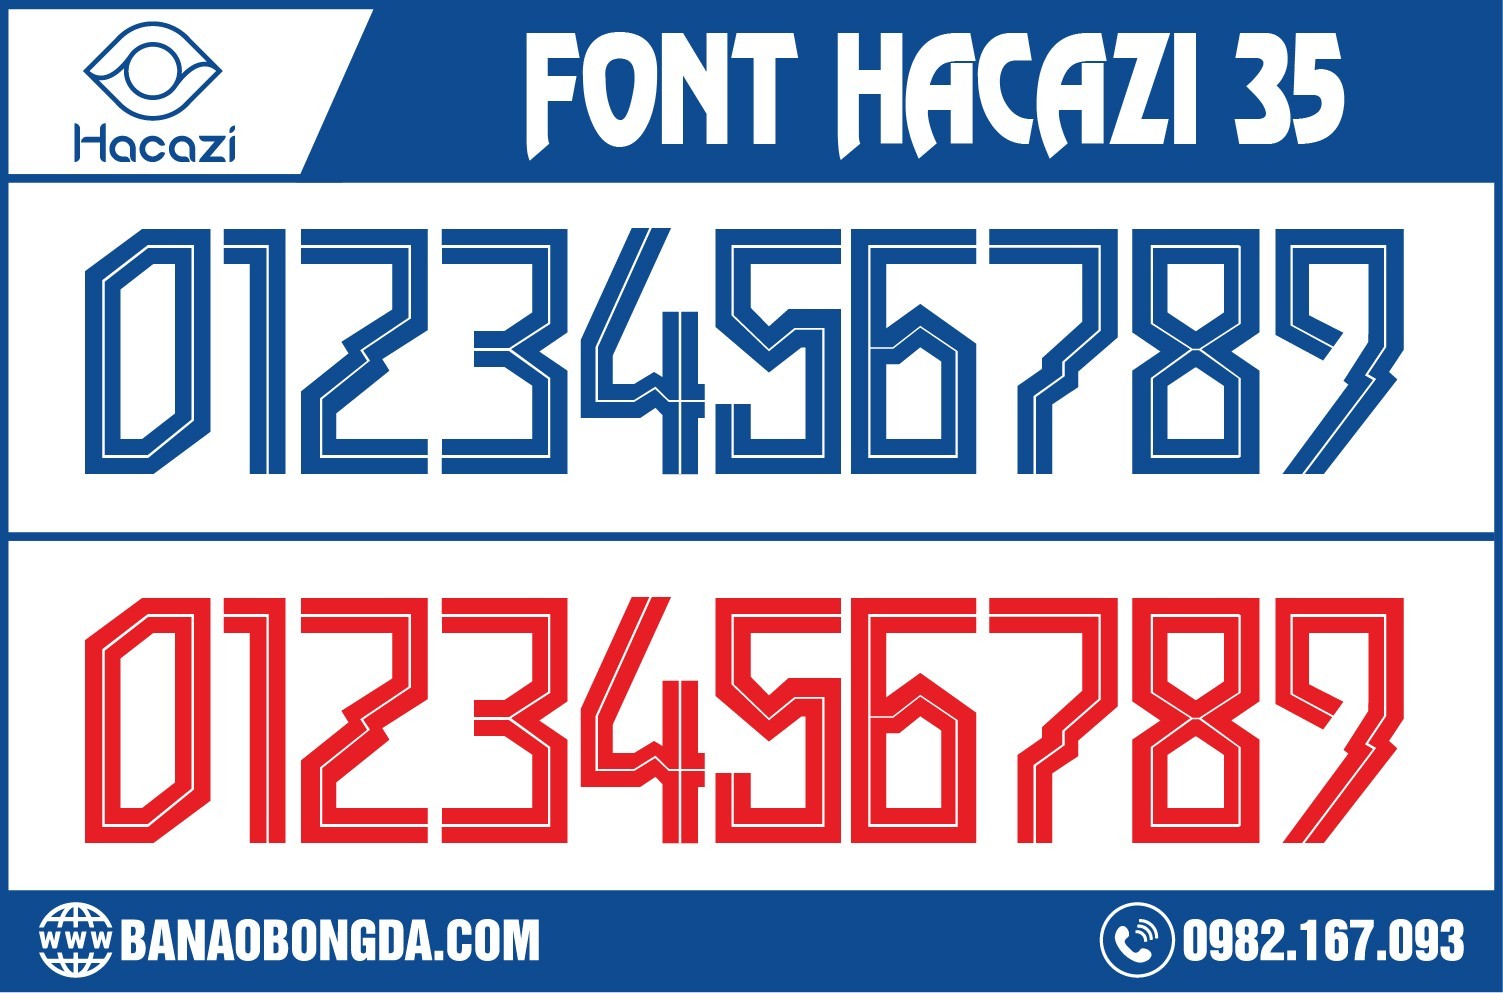 Sở hữu ngay phong cách mẫu font số áo bóng đá 35 2023 ấn tượng tại Hacazi Sport. Tuy nóđơn giản trong thiết kế, nhưng lại độc đáo trong cách phối màu ngay thôi nào. Màu đỏ và màu xanh ya đậm này chắc chắn sẽ khiến cho bạn thấy thích thú và ấn tượng đấy ạ. 